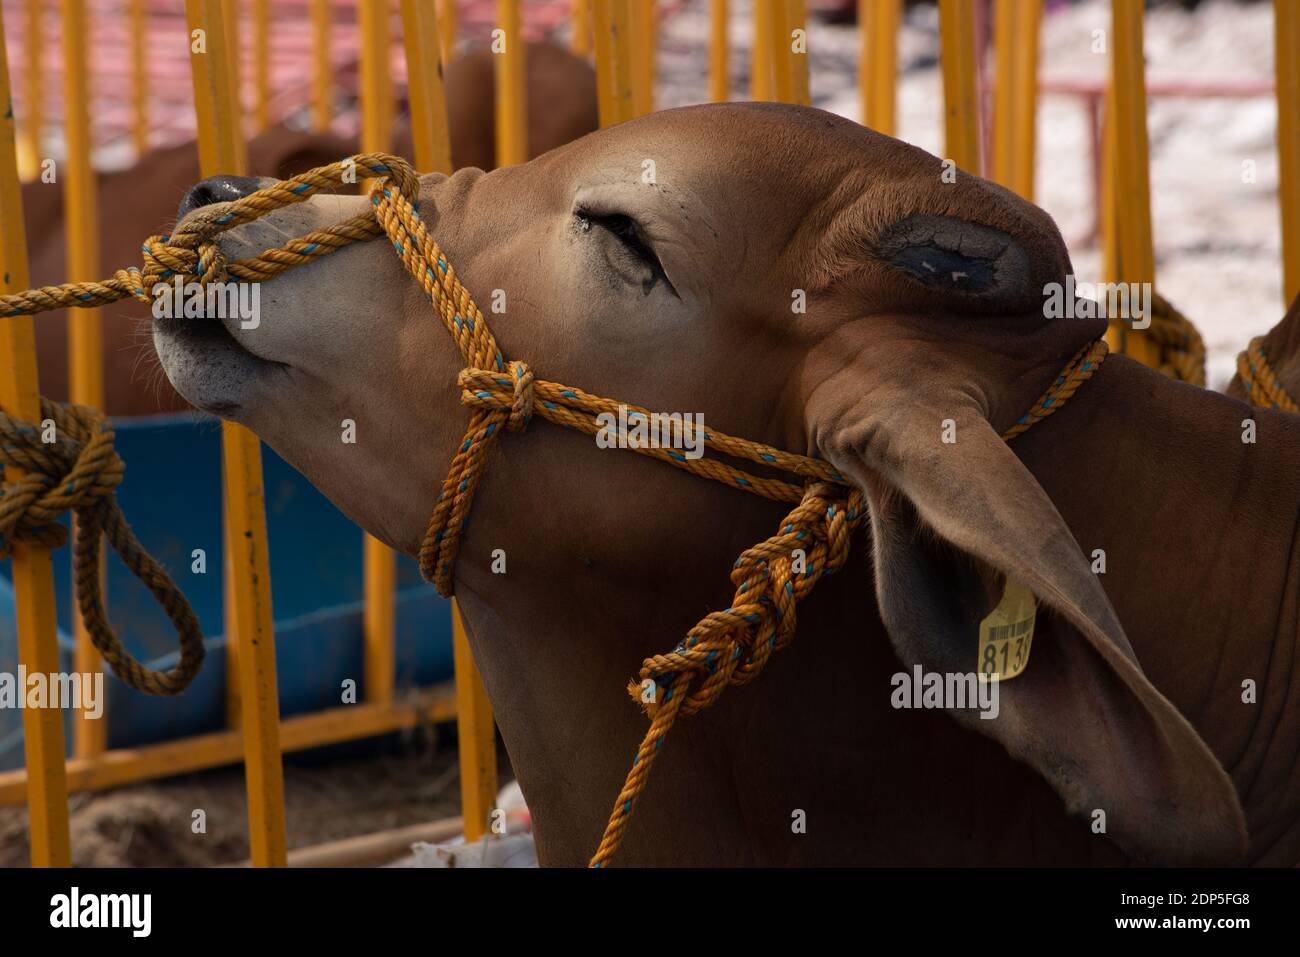 Un toro tenta di muovere una corda gialla che sta irritando il naso. Foto Stock